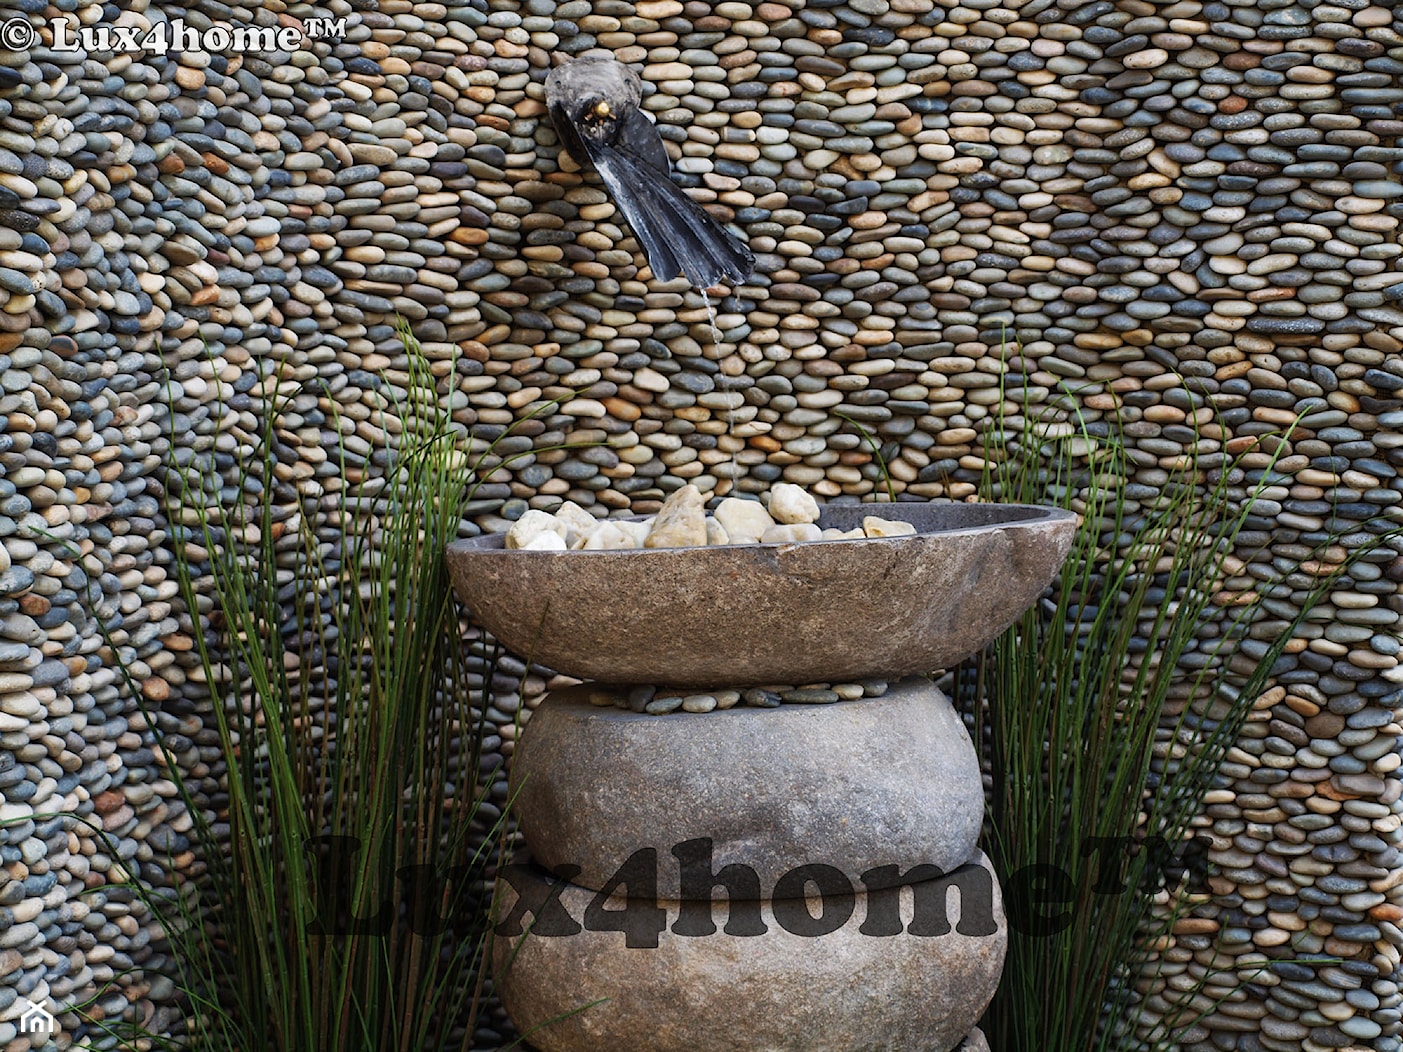 Kamienna umywalka z otoczaka w łazience – umywalki z kamienia - zdjęcie od Lux4home™ - Homebook